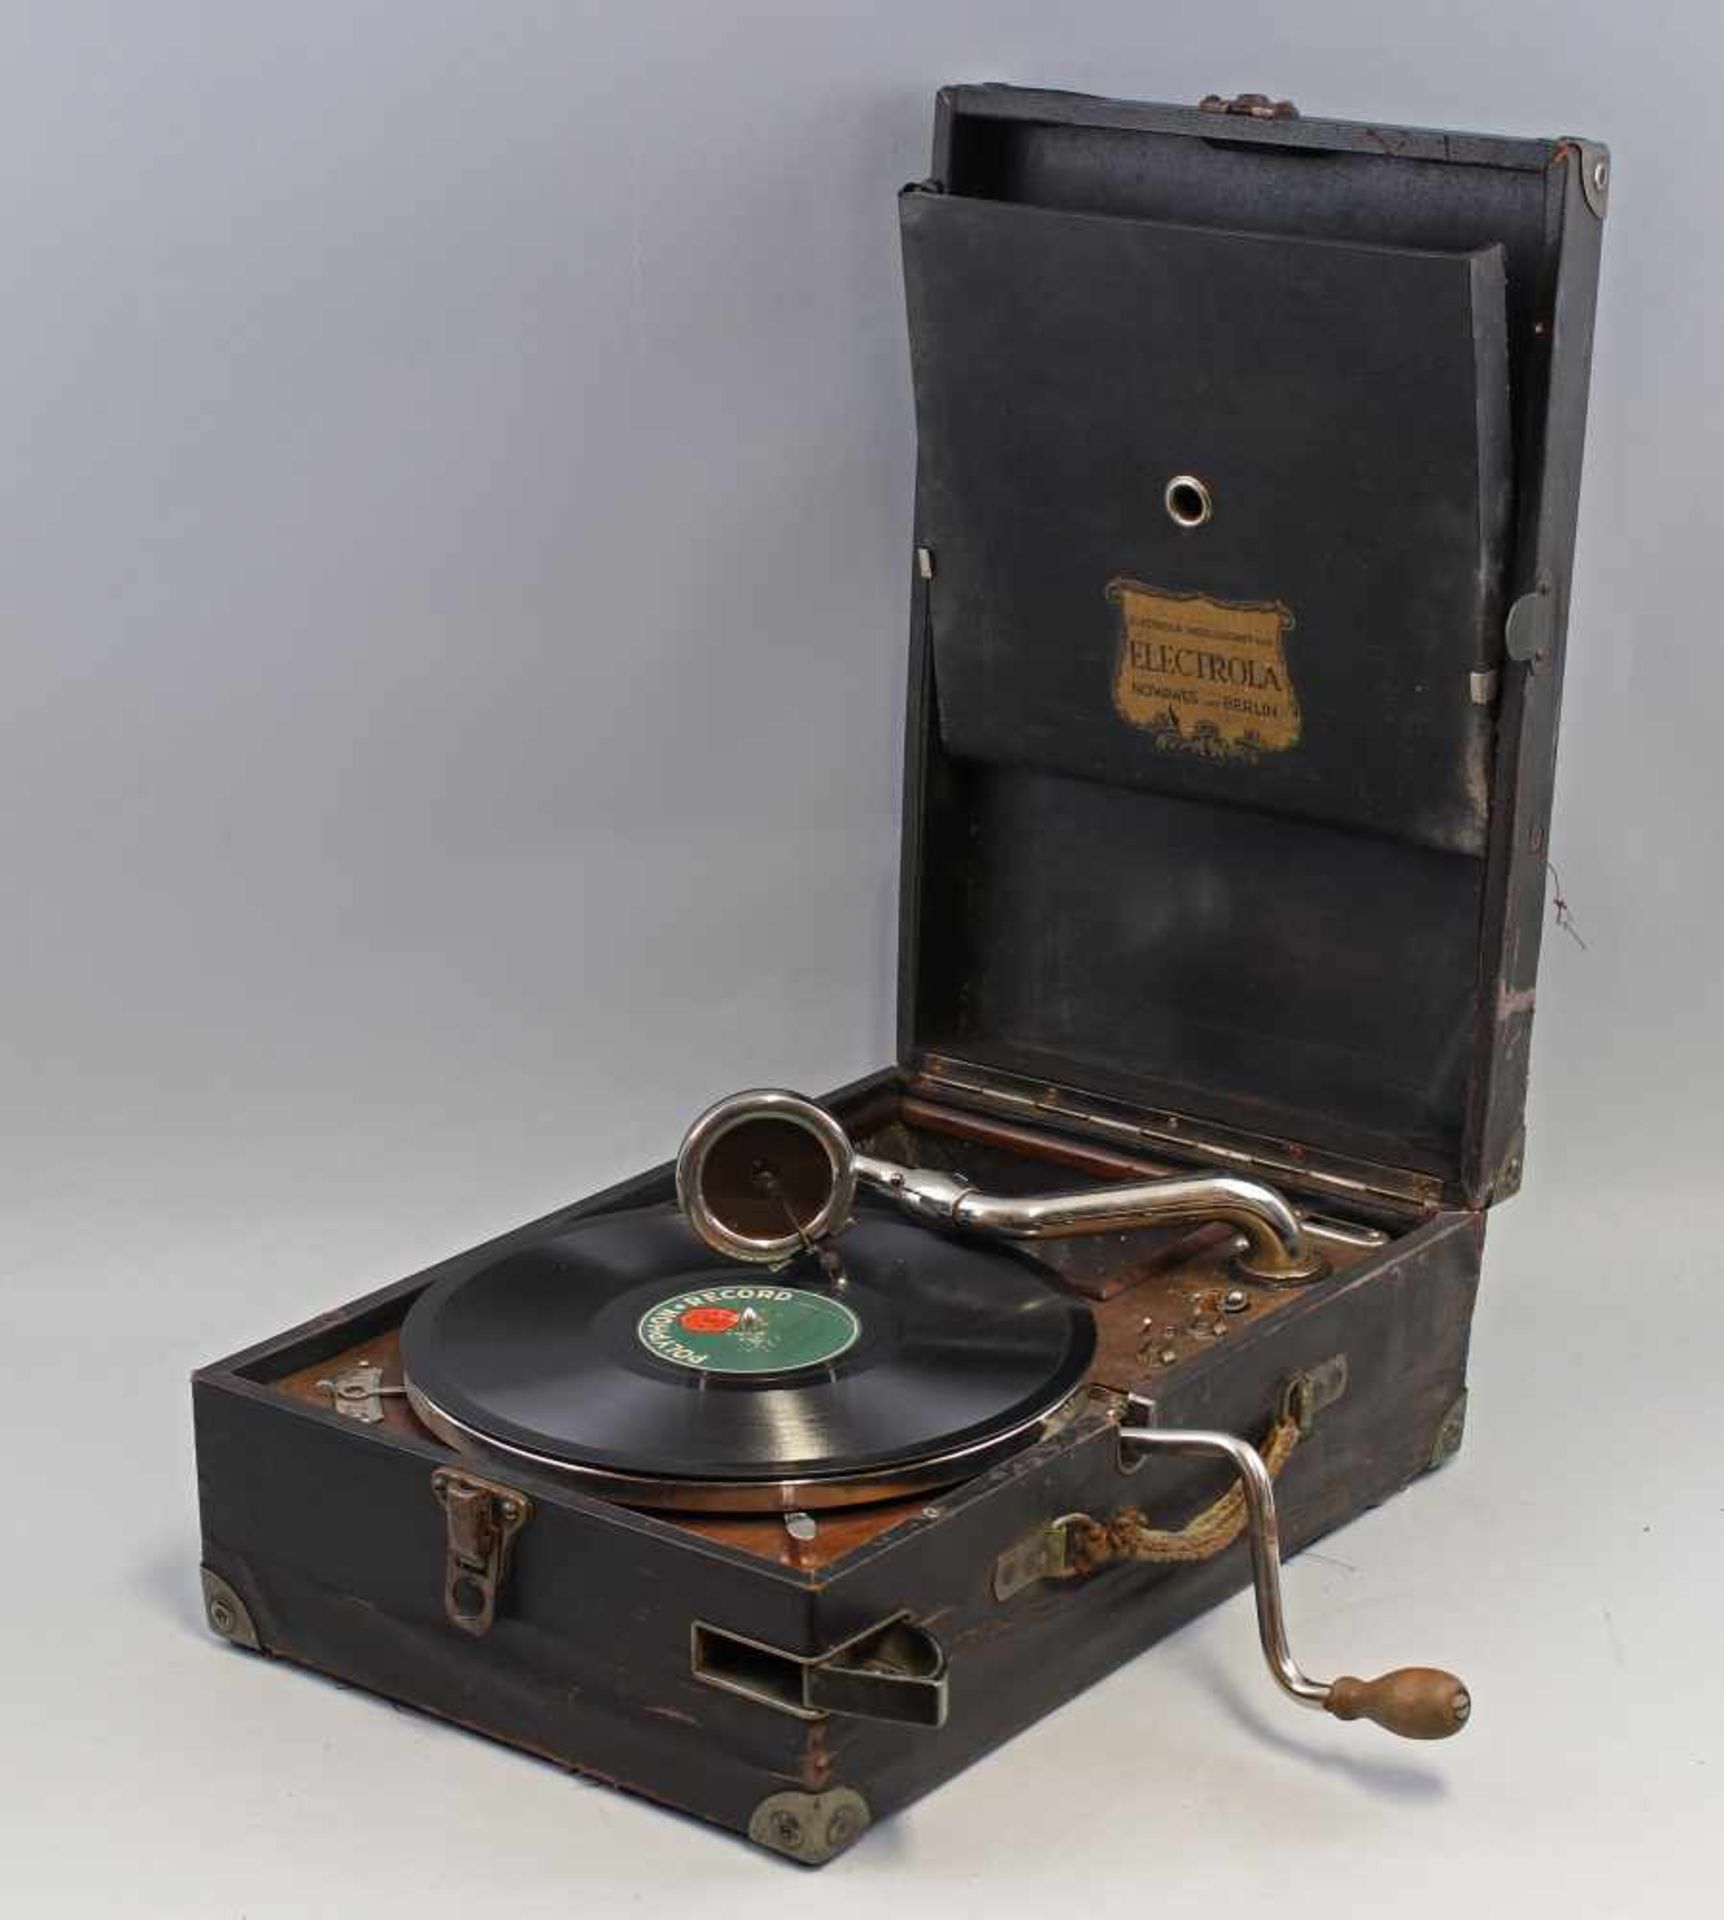 Koffer-Grammophon Electrolakleines, tragbares Tischgrammophon, Holzkorpus, aufklappbar, innen